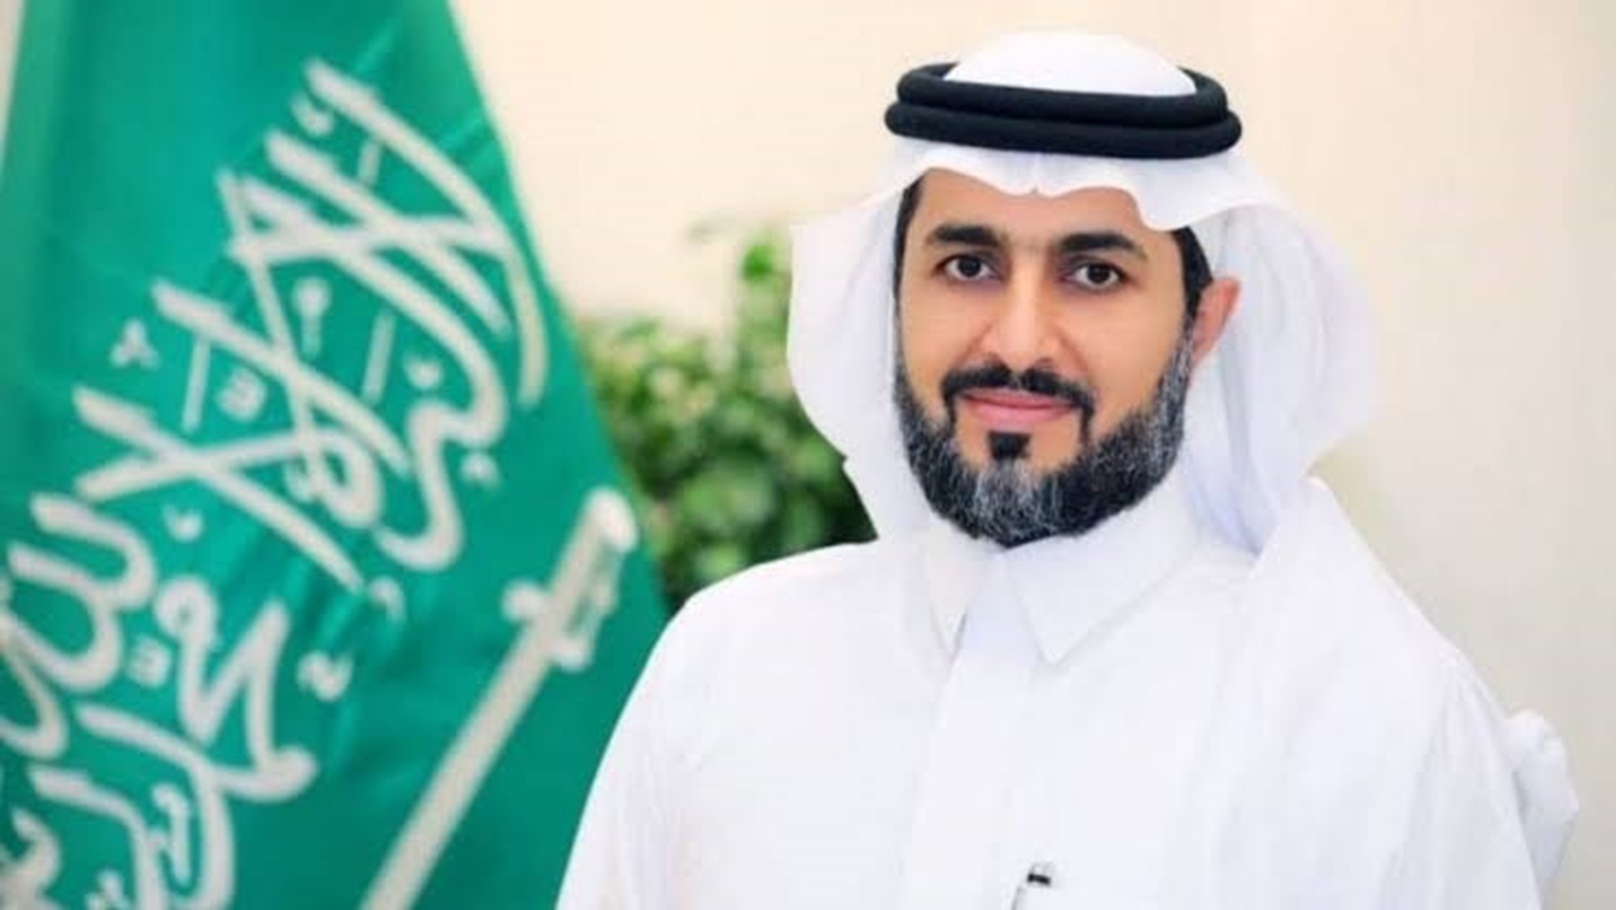 نائب وزير البيئة والمياه والزراعة السعودي منصور المشيطي